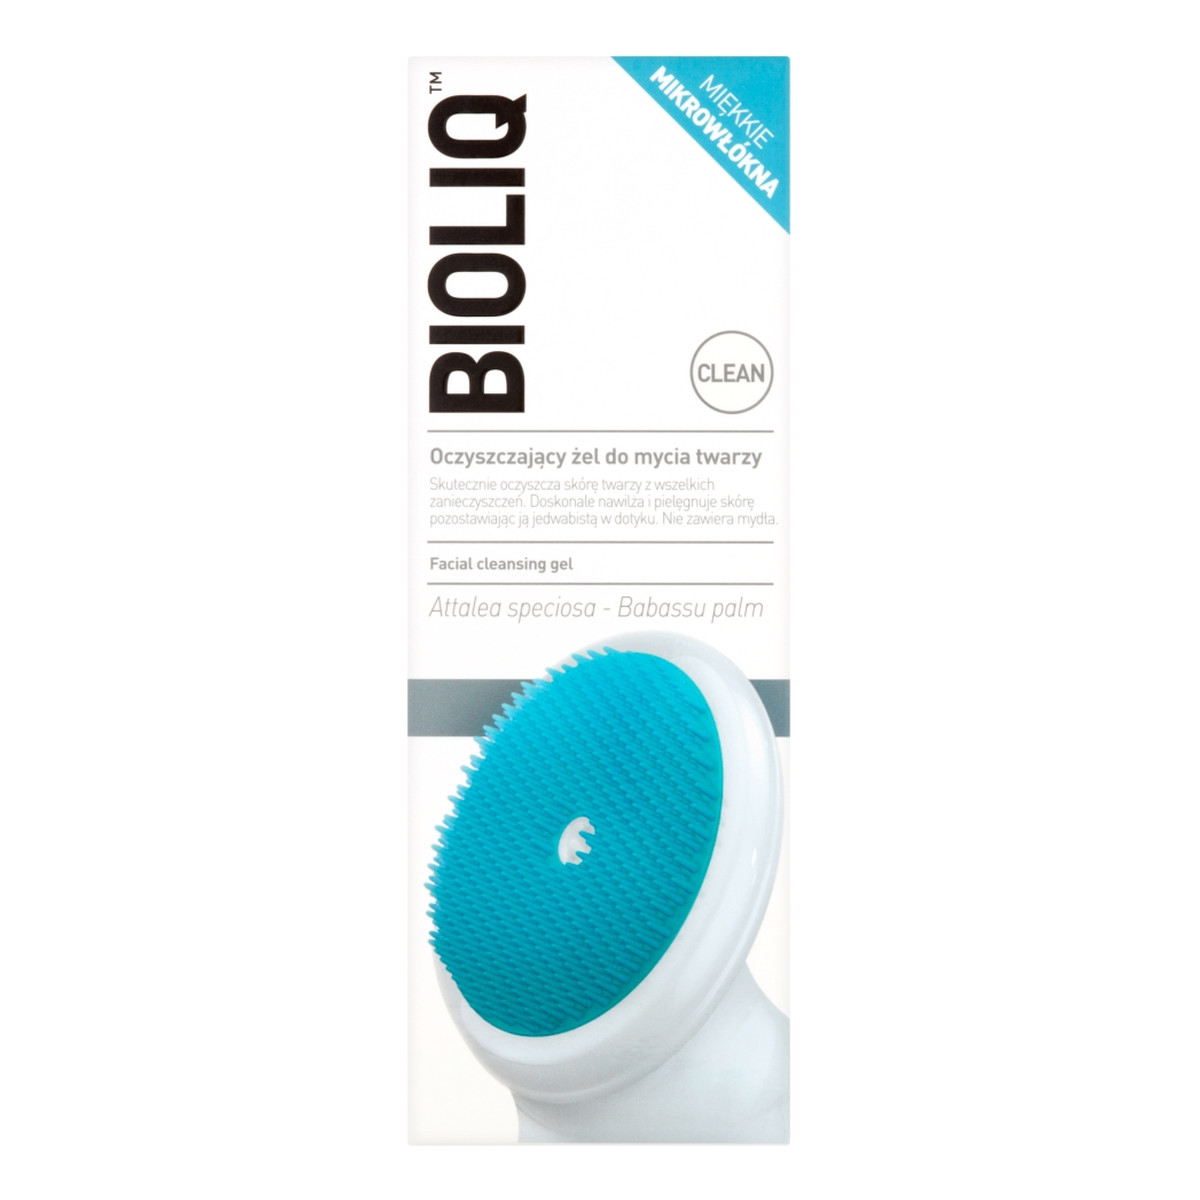 Bioliq Clean oczyszczający Żel do mycia twarzy 125ml